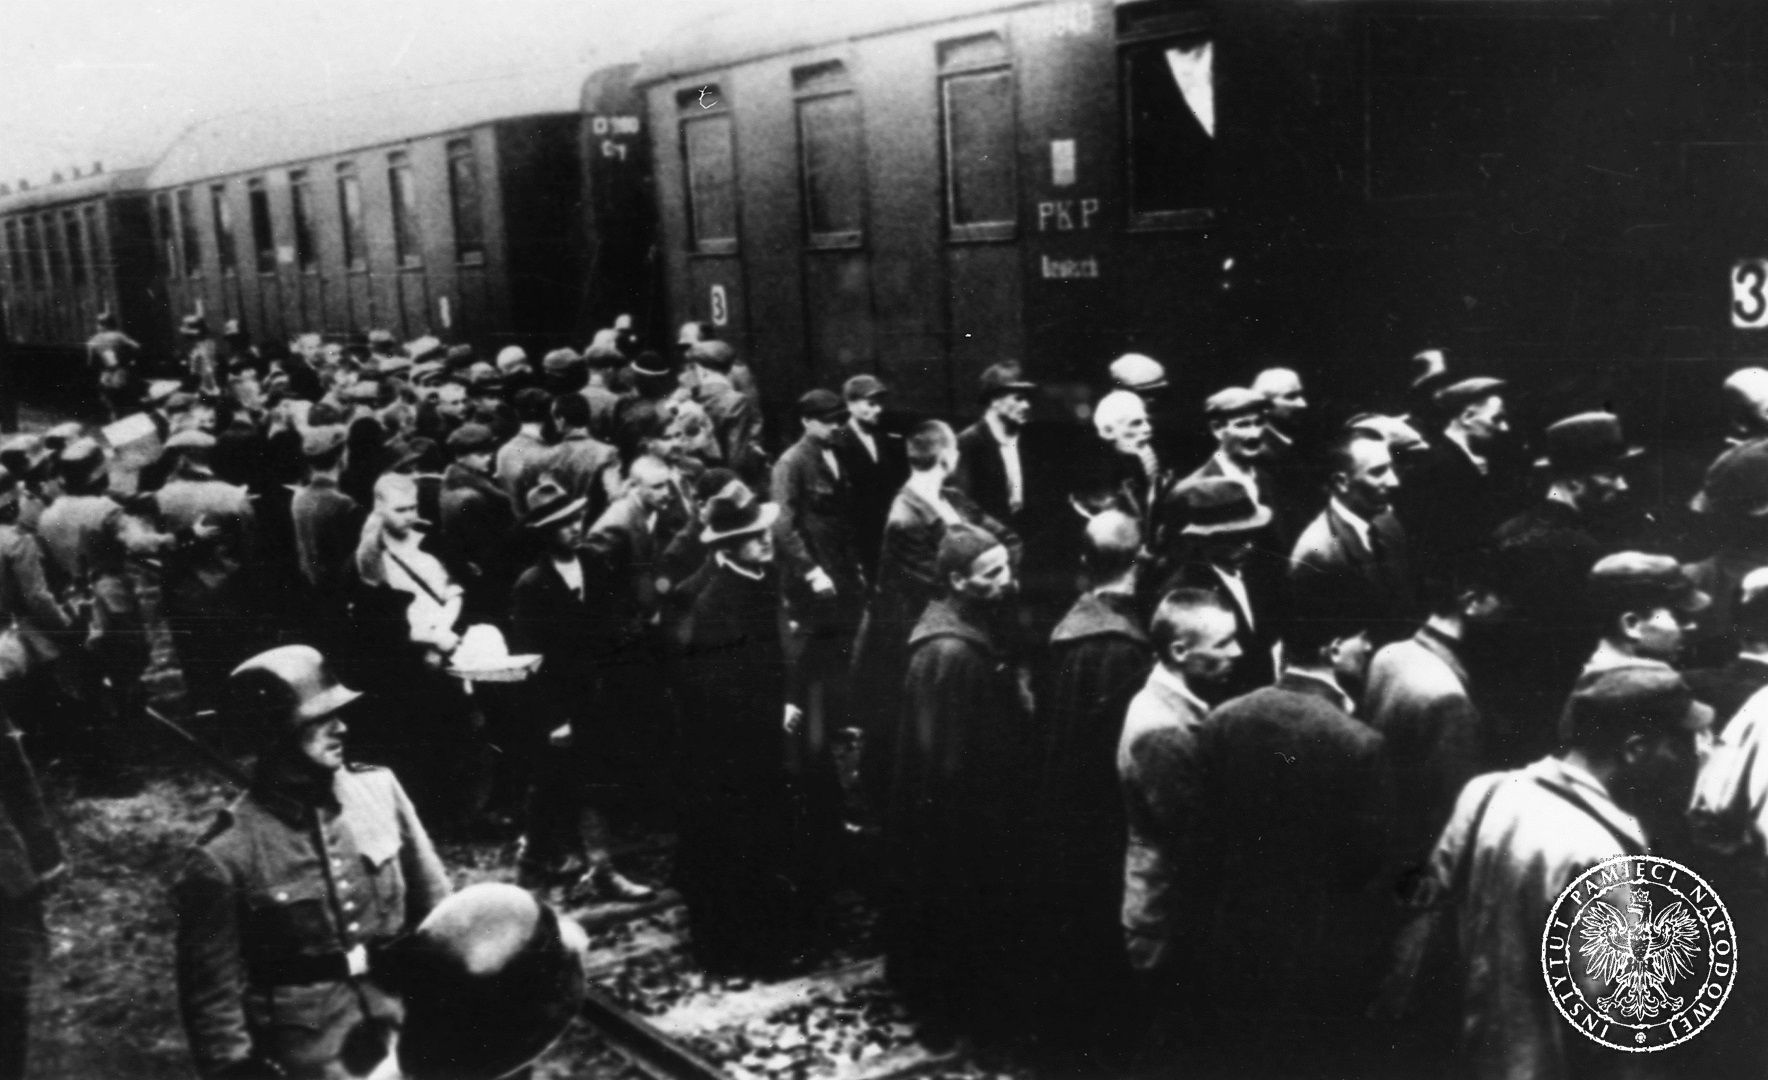 Załadunek więźniów do wagonów. Rampa towarowa przy dworcu kolejowym w Tarnowie, 14 czerwca 1940 / Źródło: Wikimedia Commons